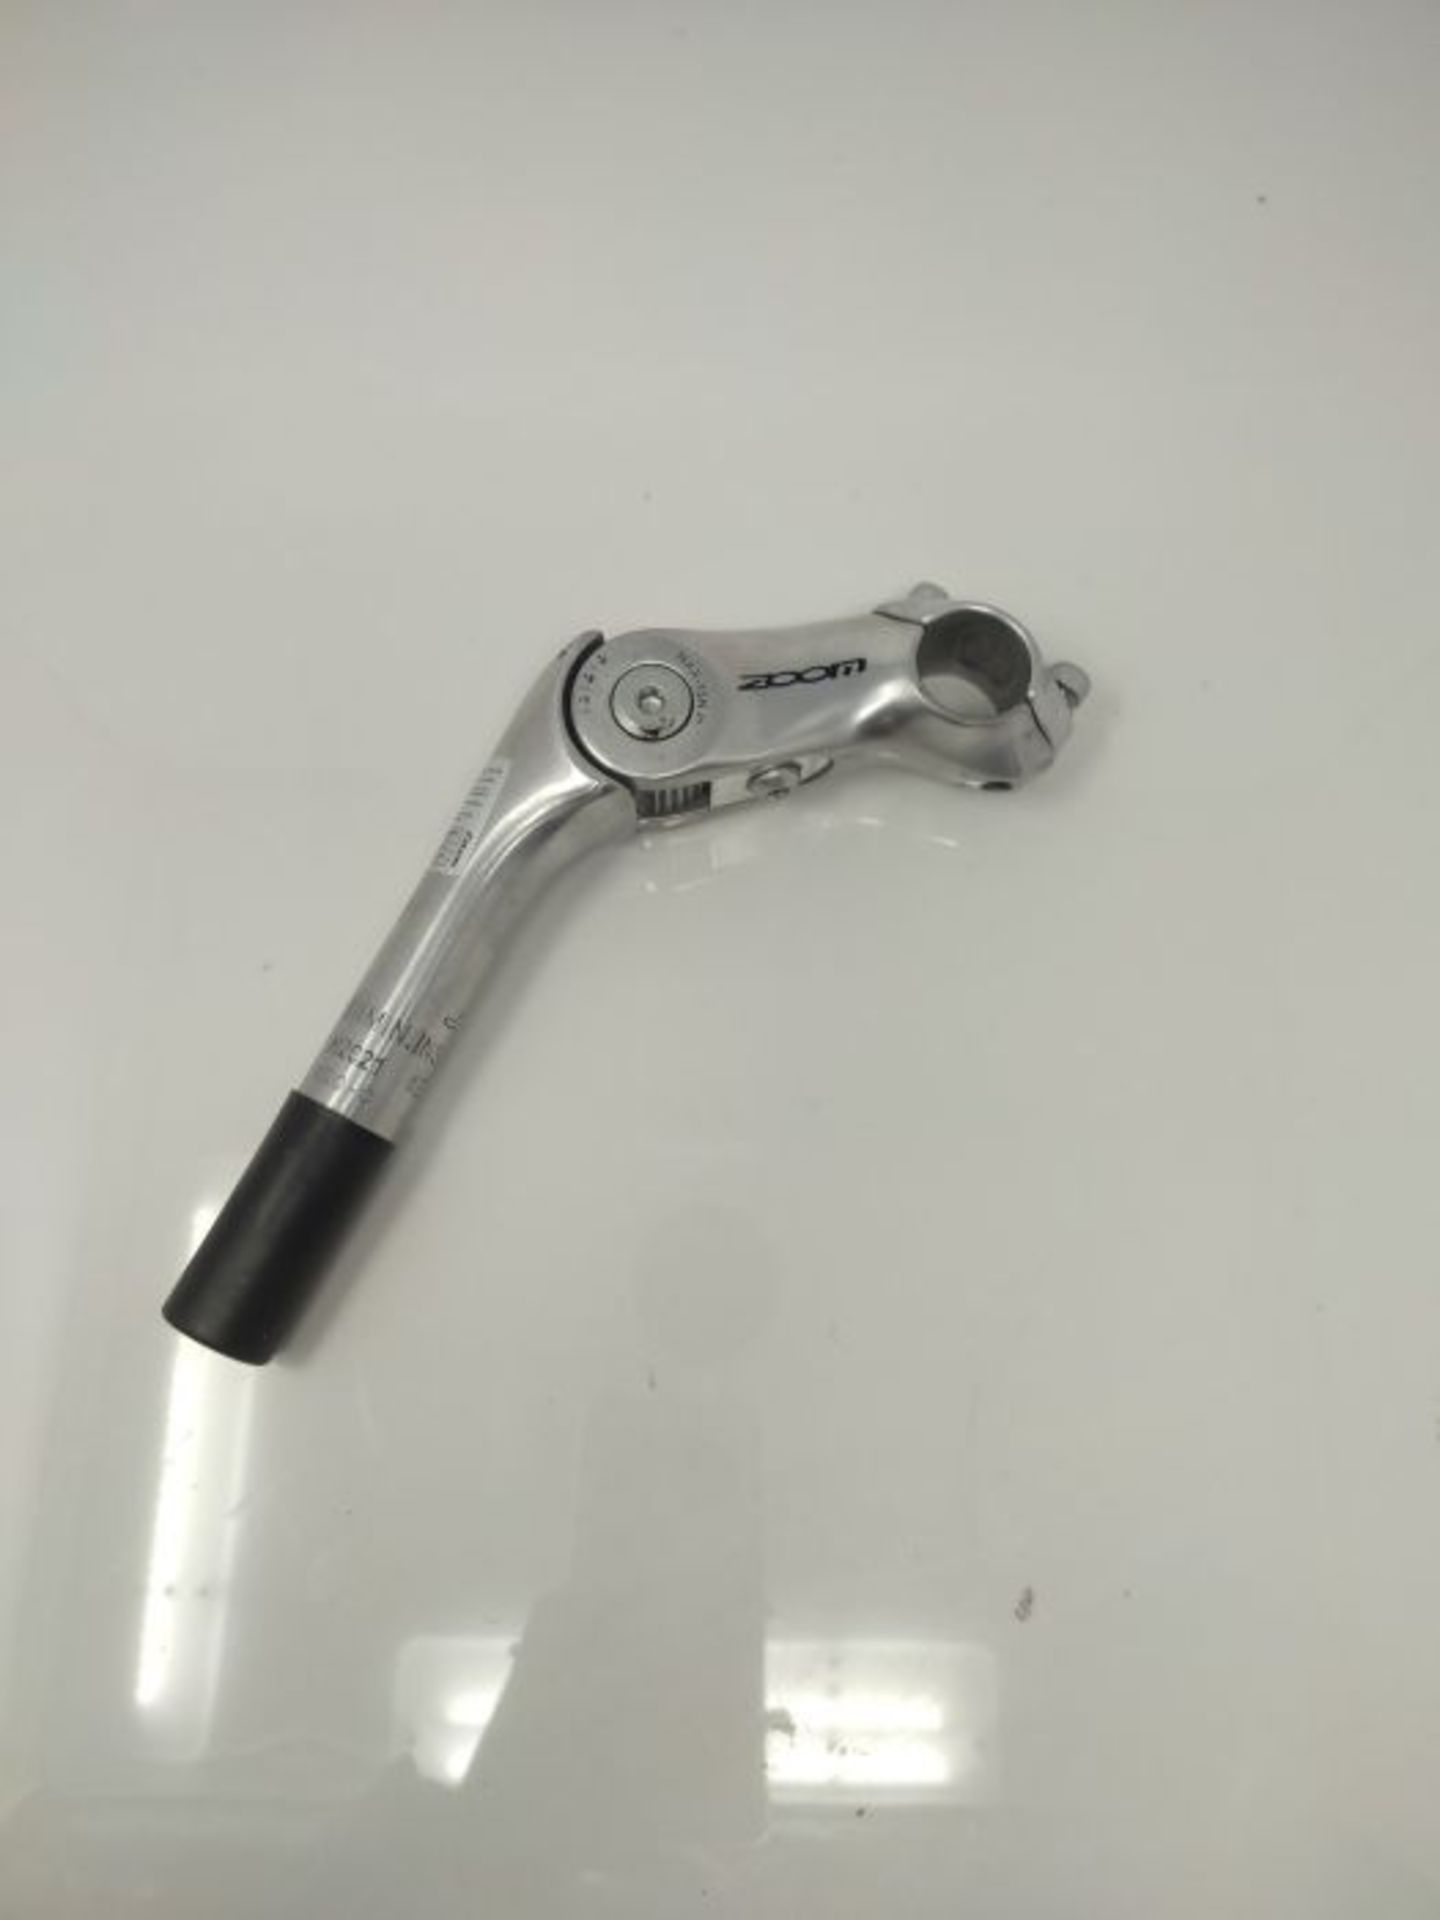 Cicli Bonin Unisex's Ctb Zoom Handlebar Stem, Silver, One Size - Image 2 of 2